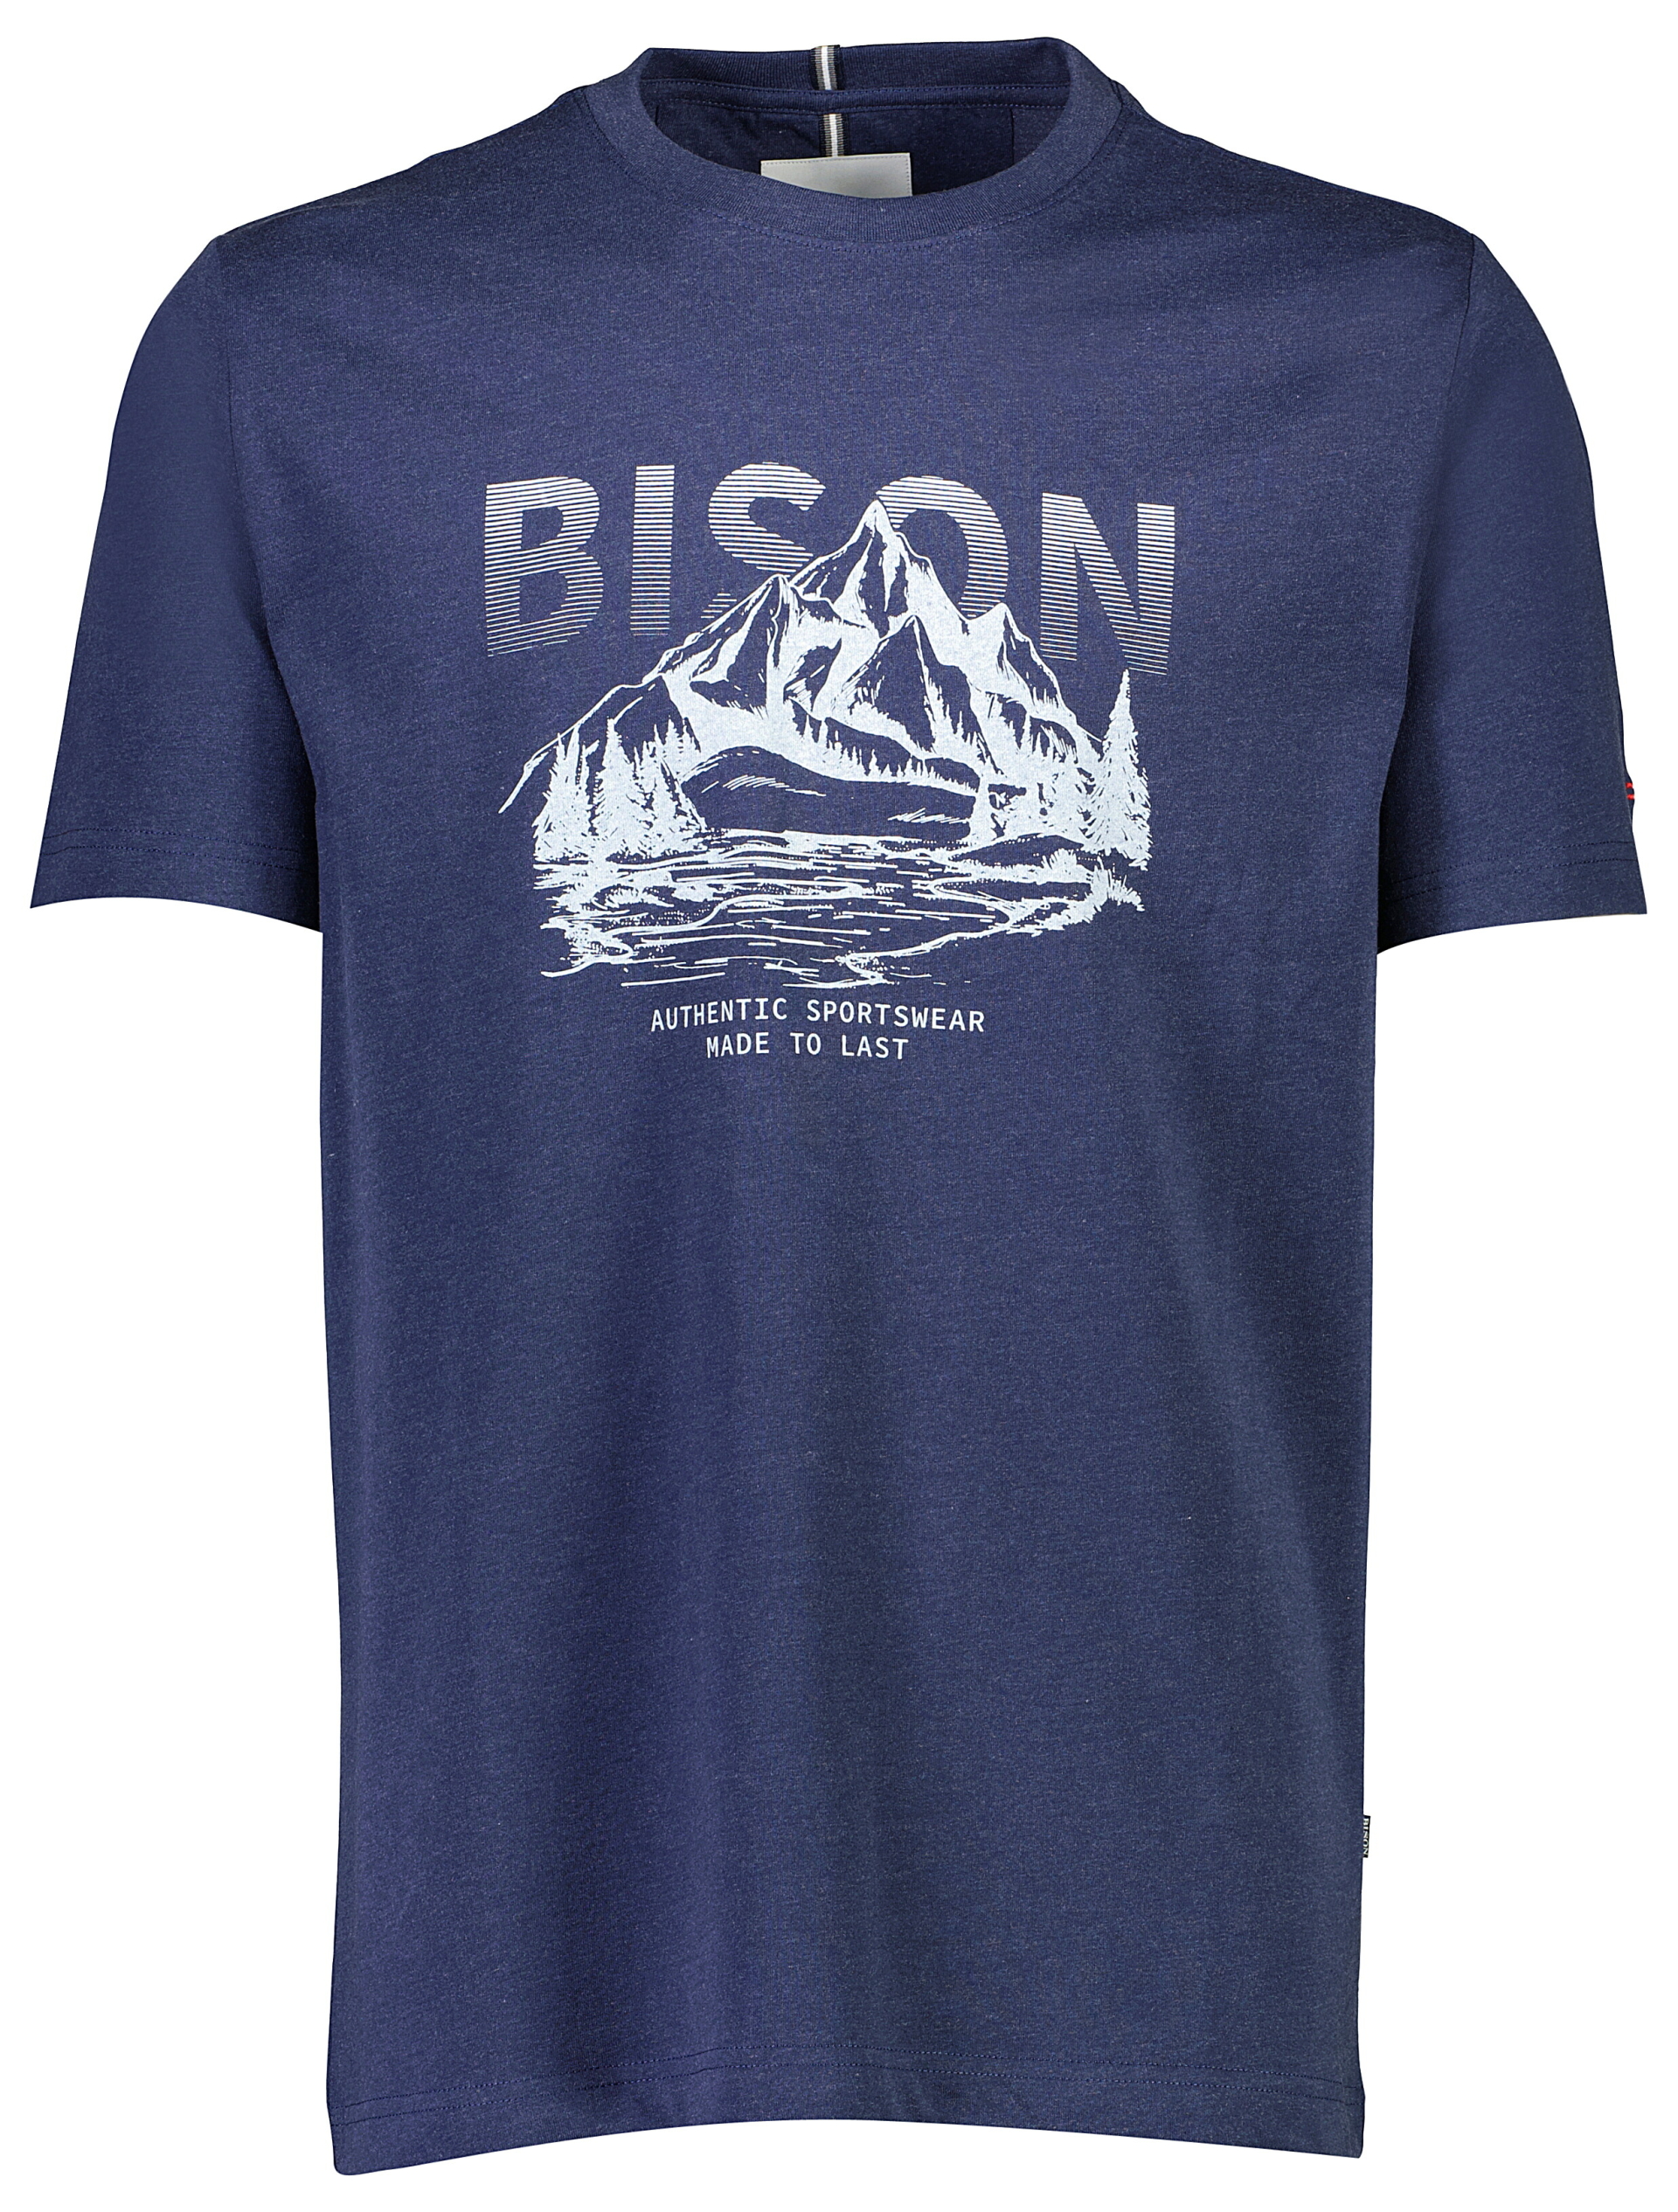 Bison T-shirt blå / navy mel